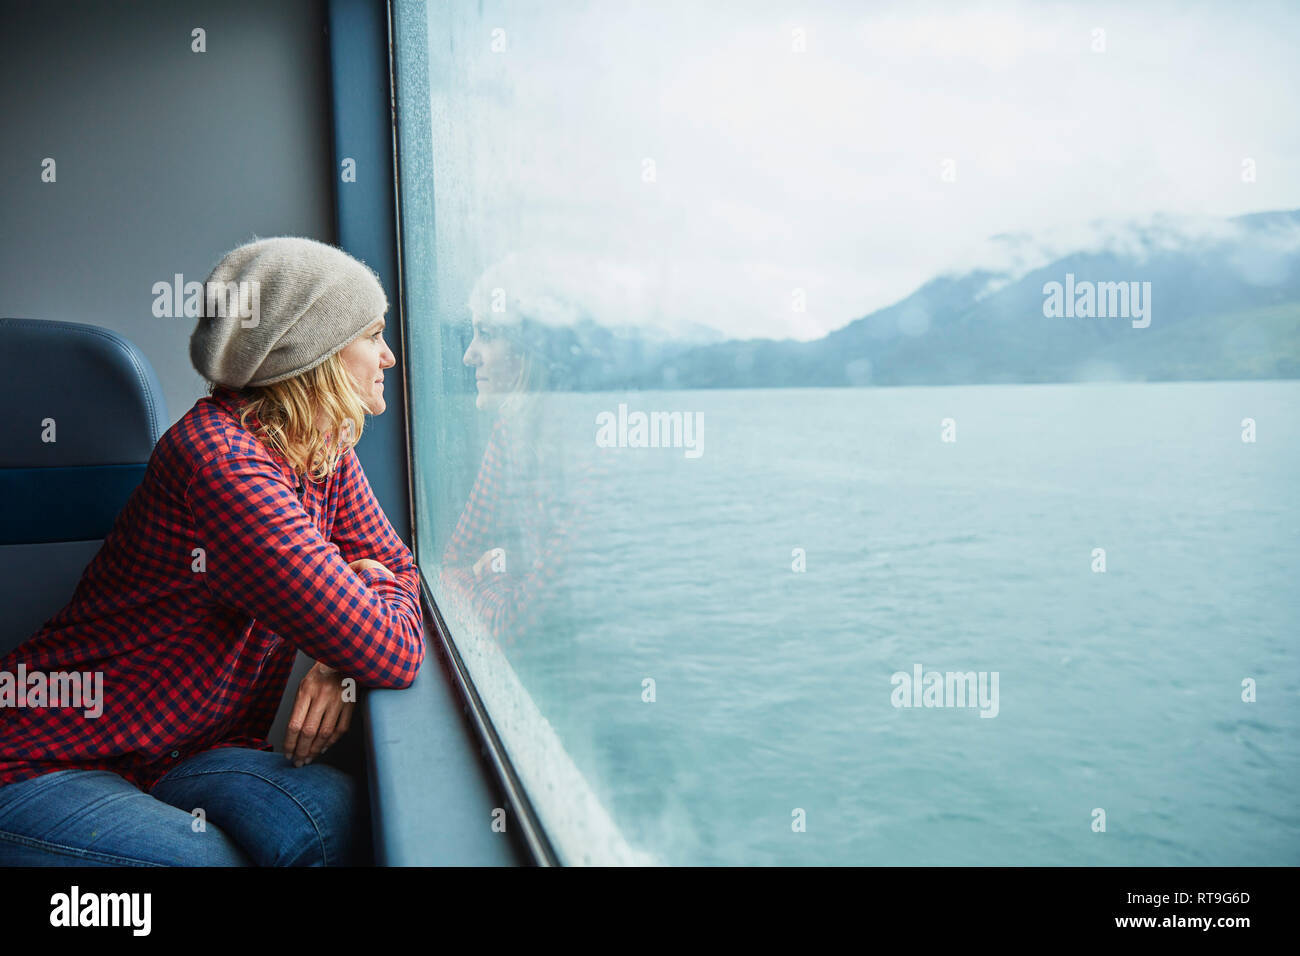 Le Chili, l'Hornopiren, femme à la fenêtre de d'un ferry Banque D'Images